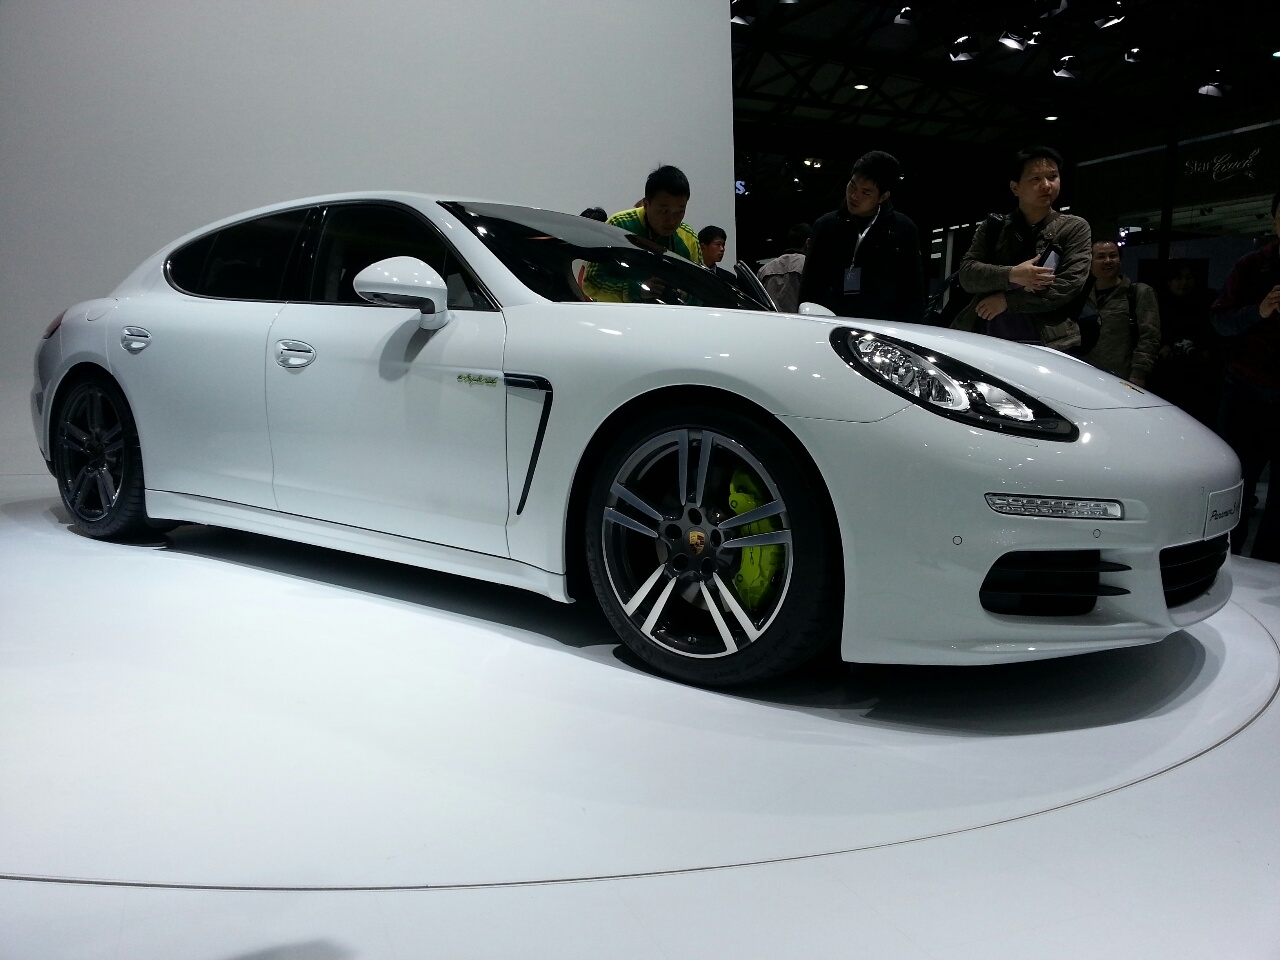 Auto Shanghai 2013 Live – Porsche Panamera S E-Hybrid